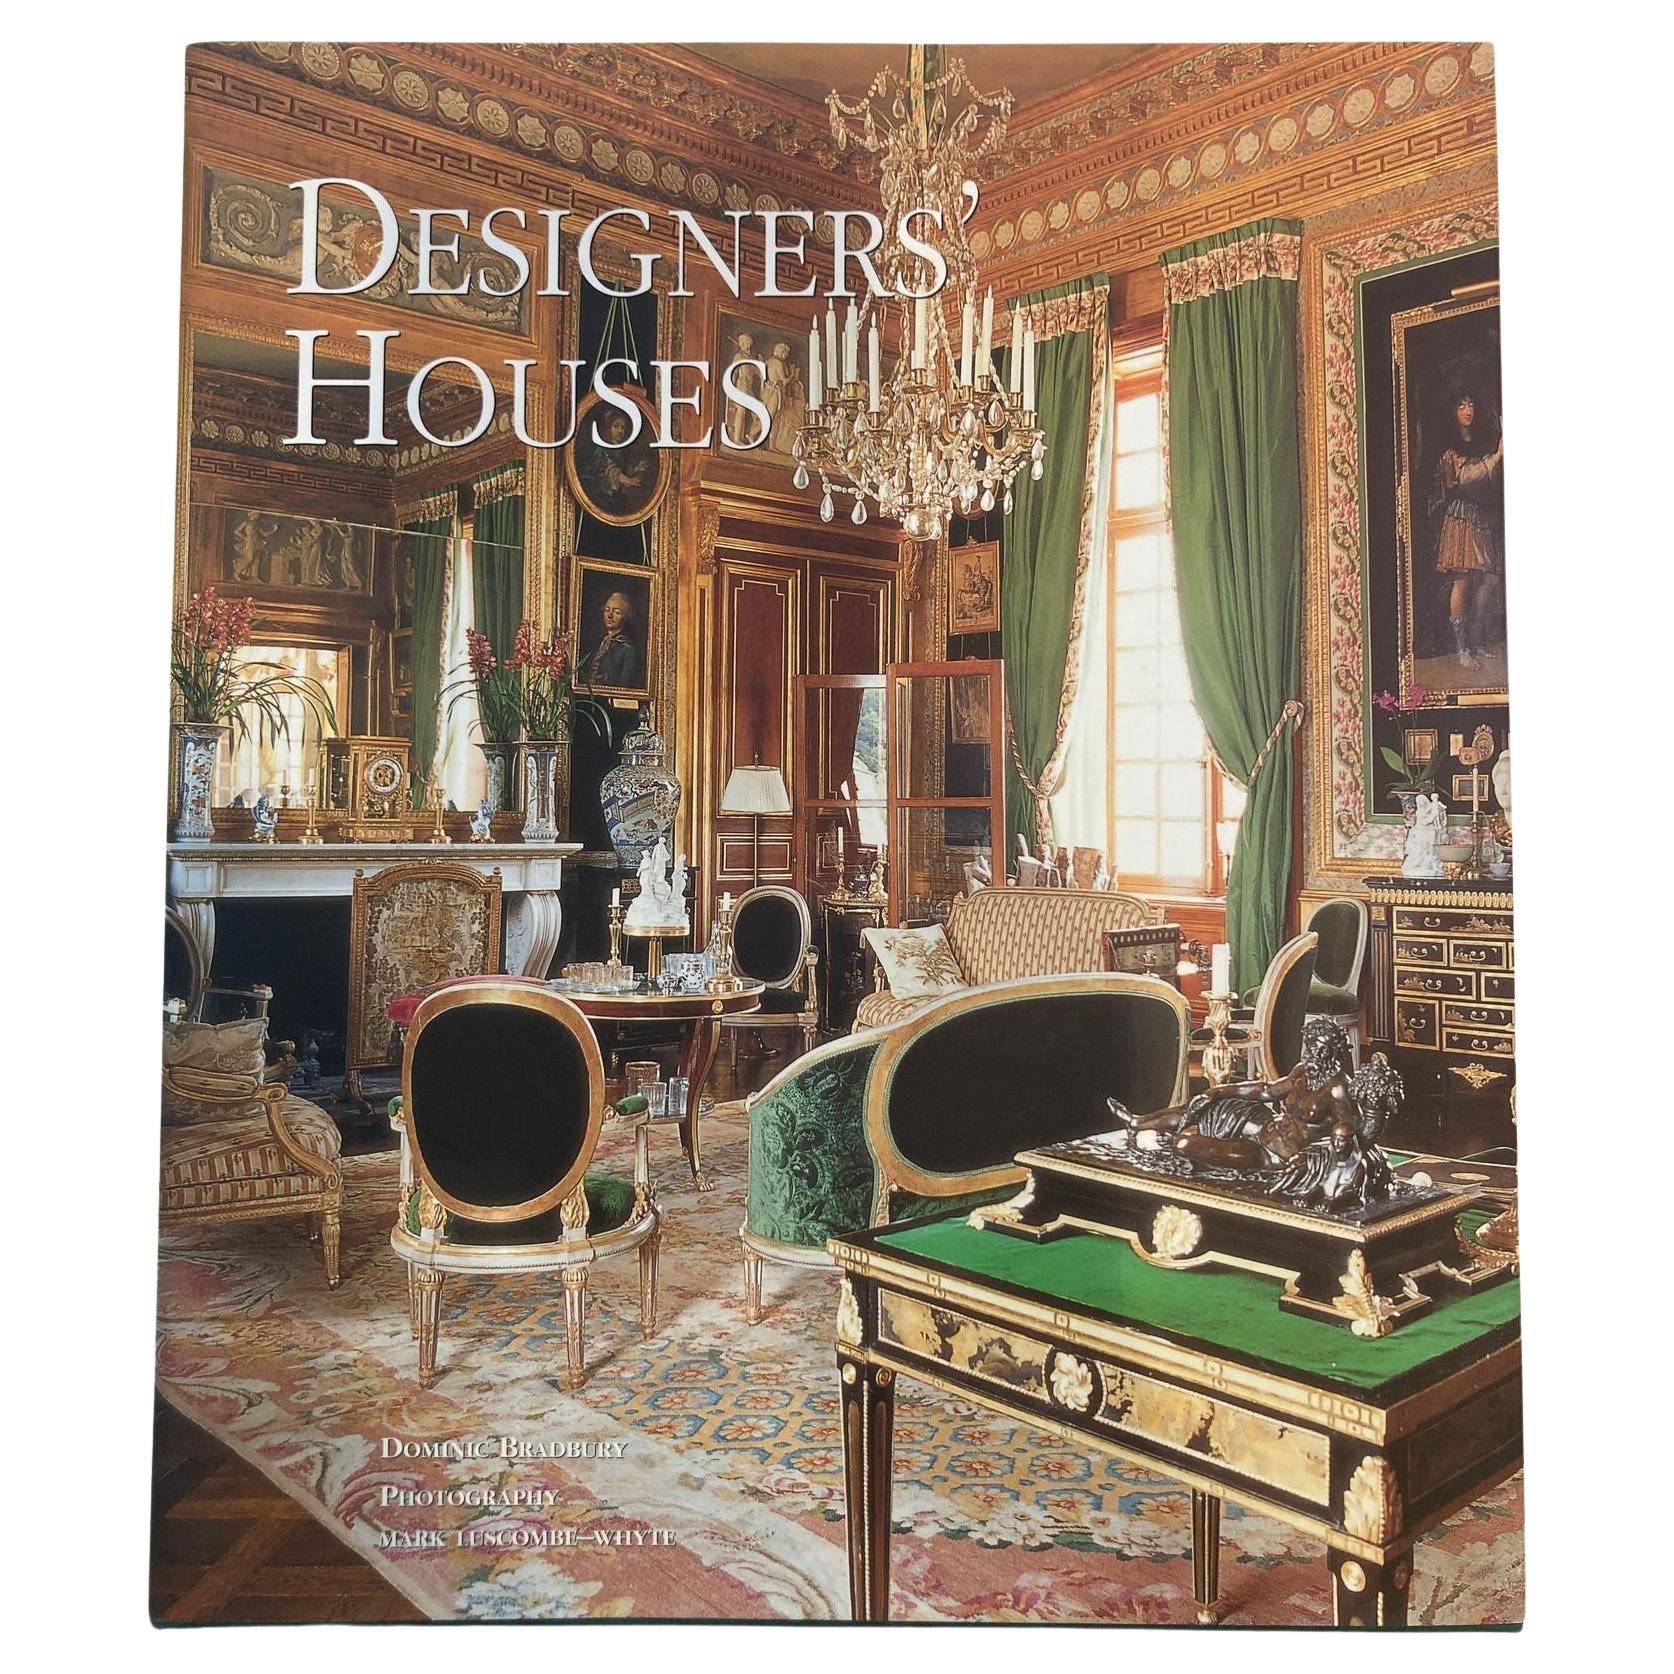 Designers' Houses, Hardcoverbuch, Erstausgabe von Dominic Bradbury 2001